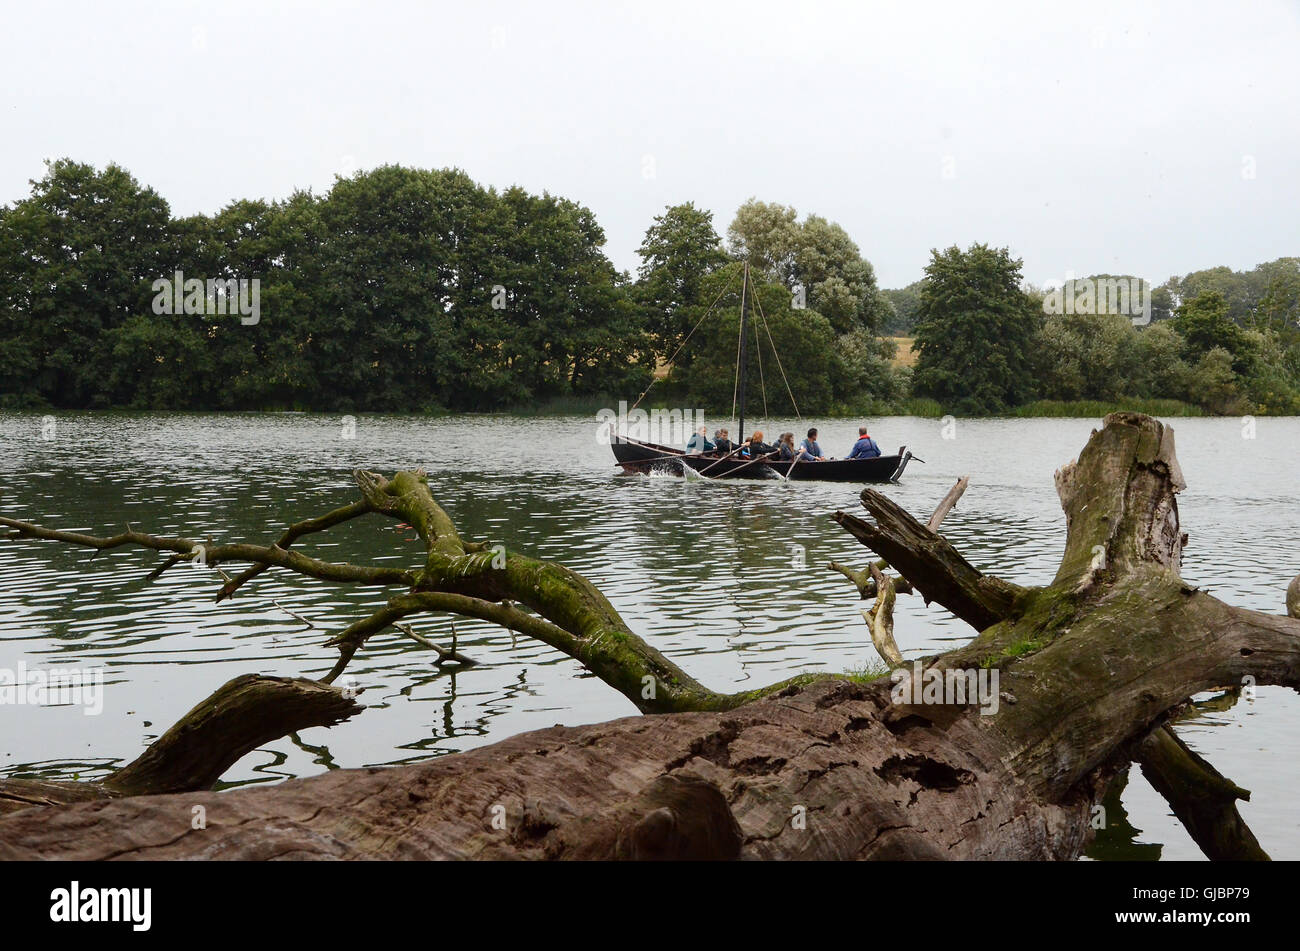 Journée historique au château de Nordborg ; sur le lac l'auditoire peut essayer l'aviron des répliques de bateaux historiques. Banque D'Images